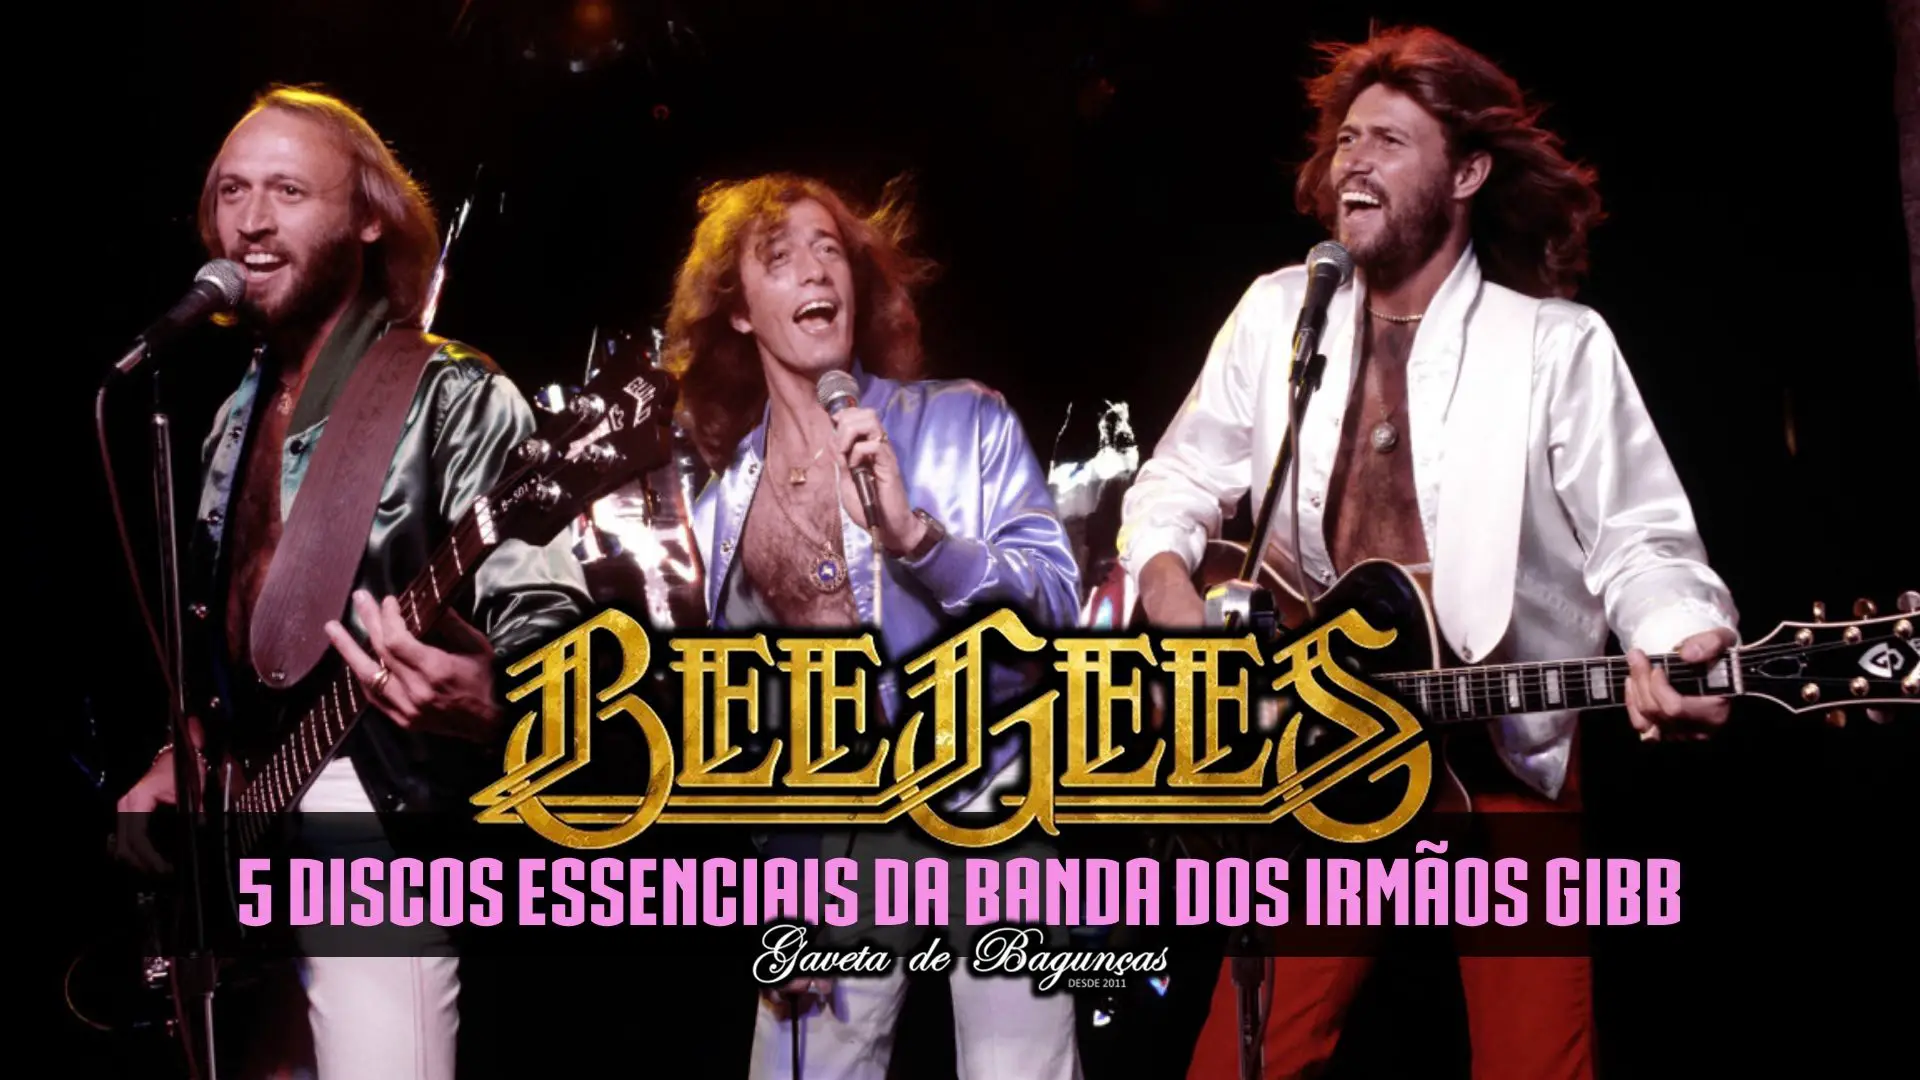 Bee Gees - Melhores Discos Pop Disco Music Músicas Maurice Robin Barry Gibb